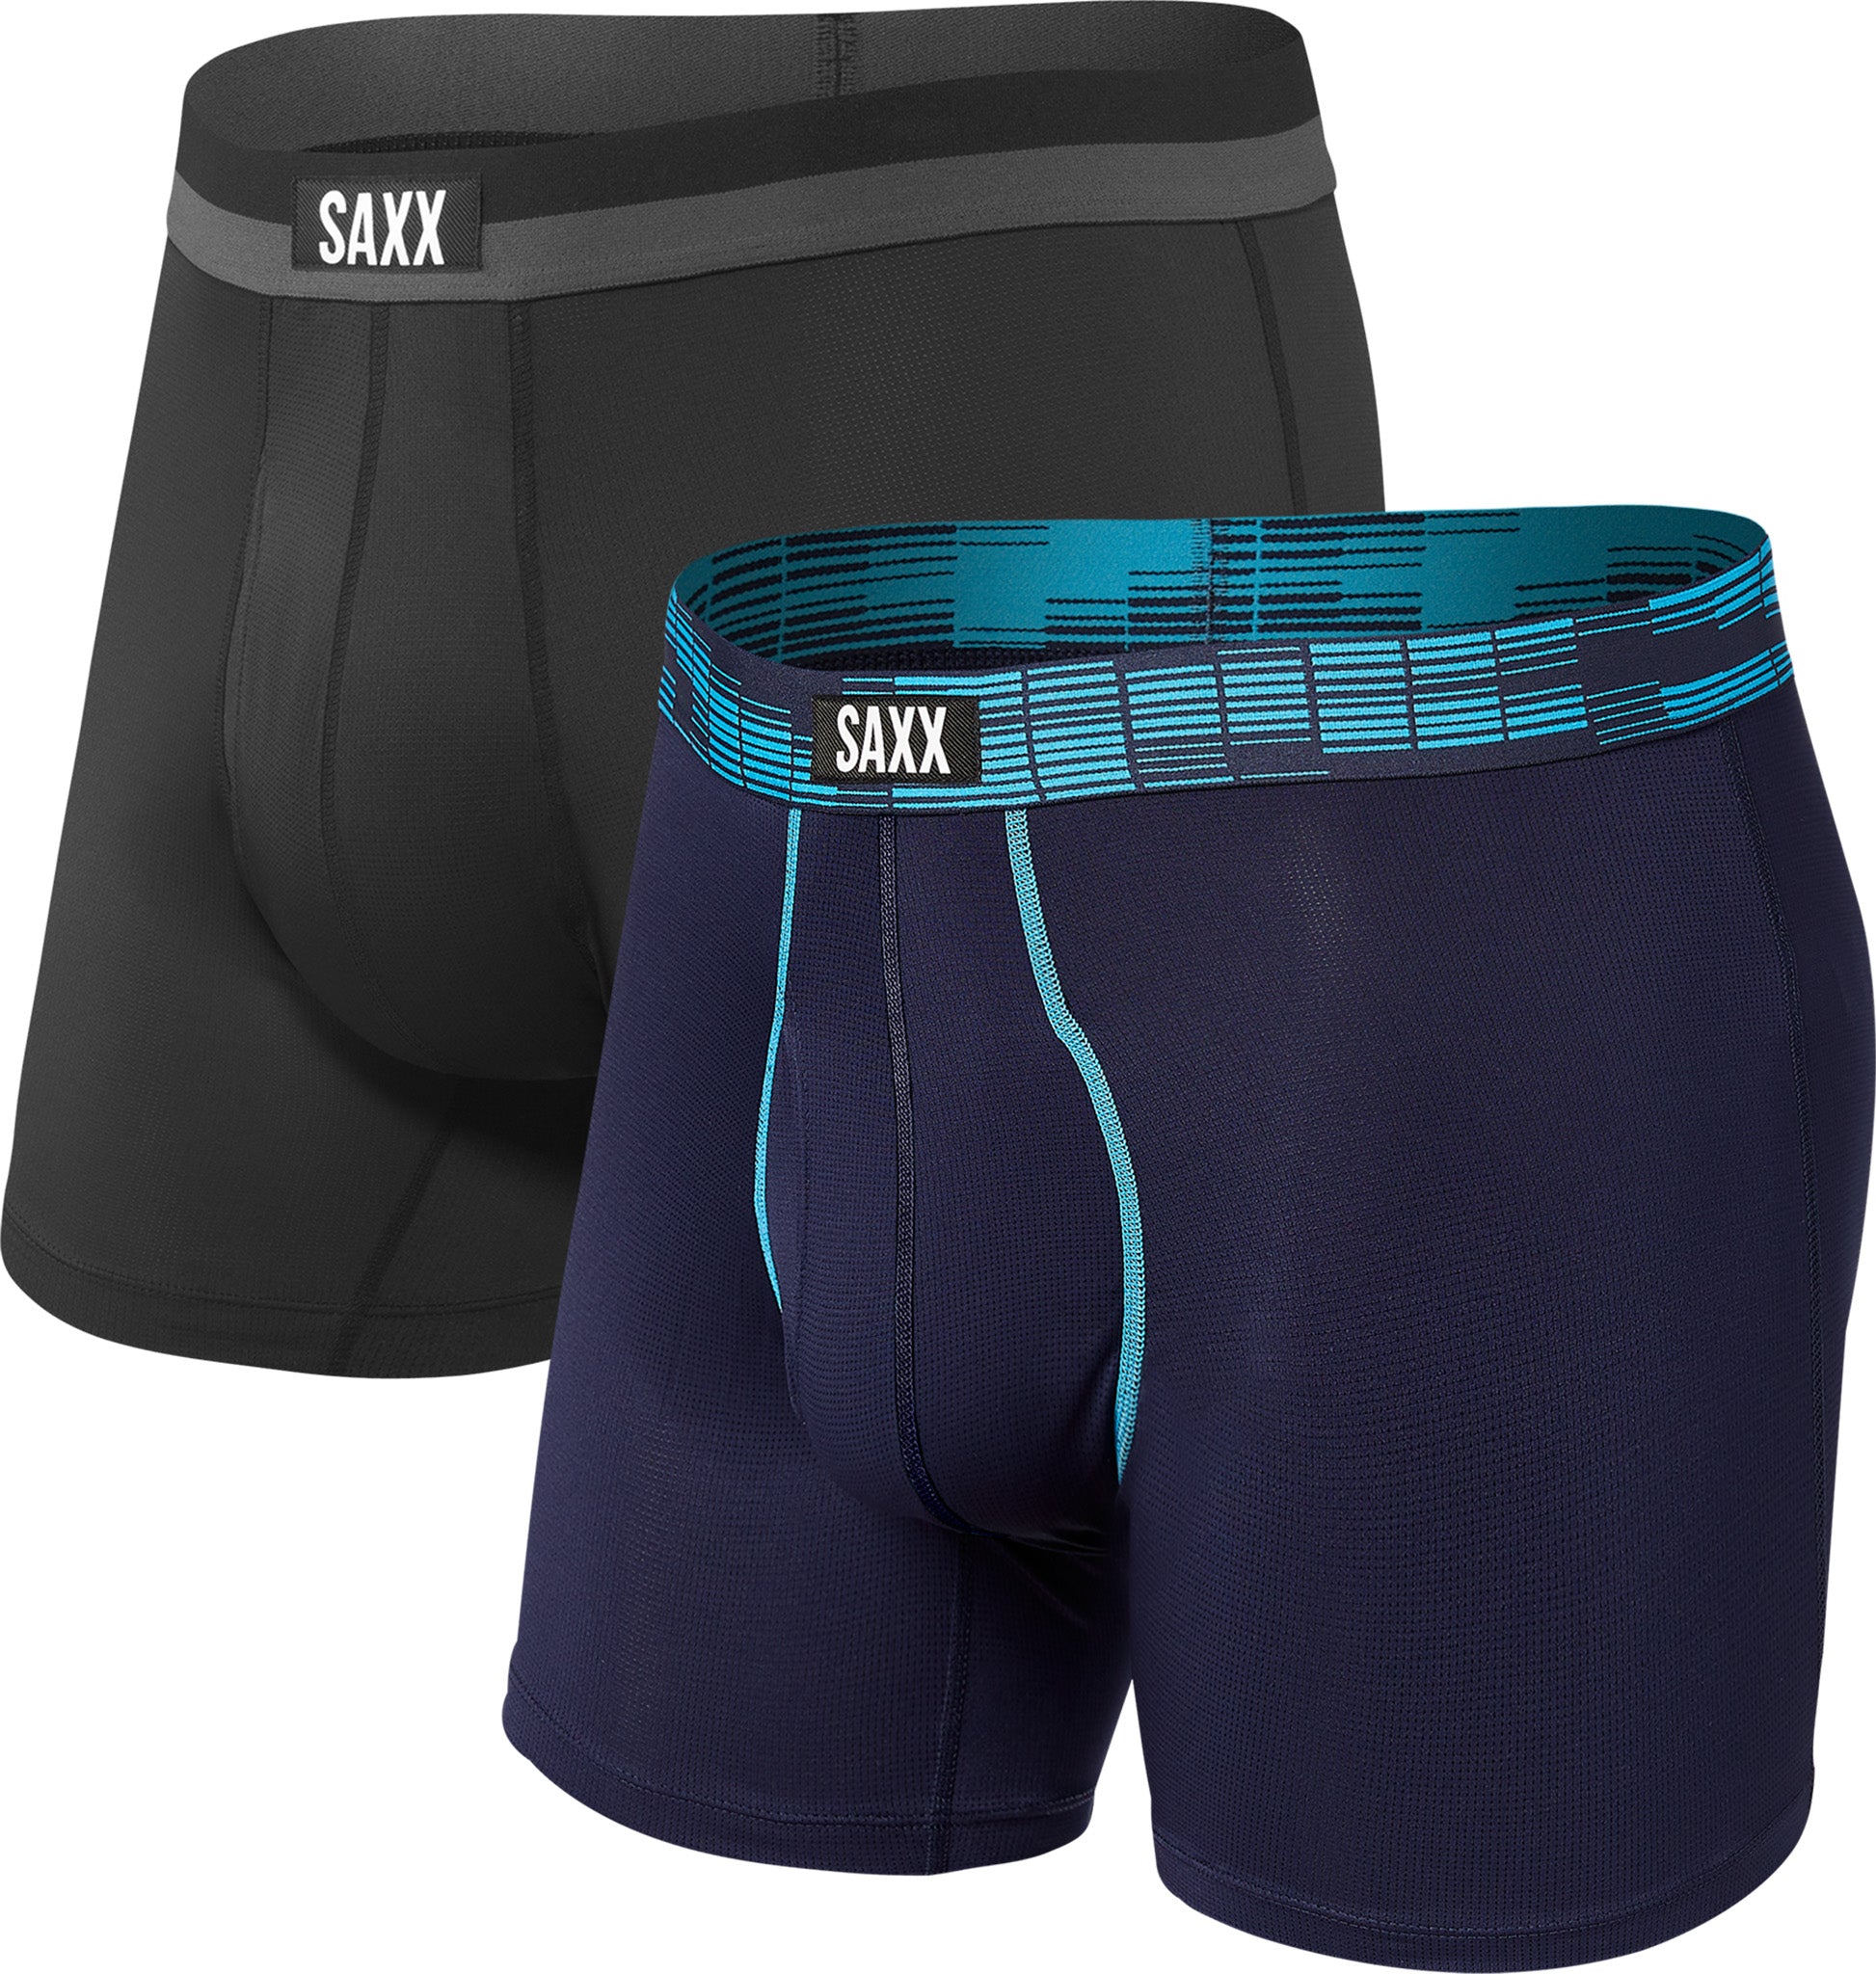 saxx underwear for men